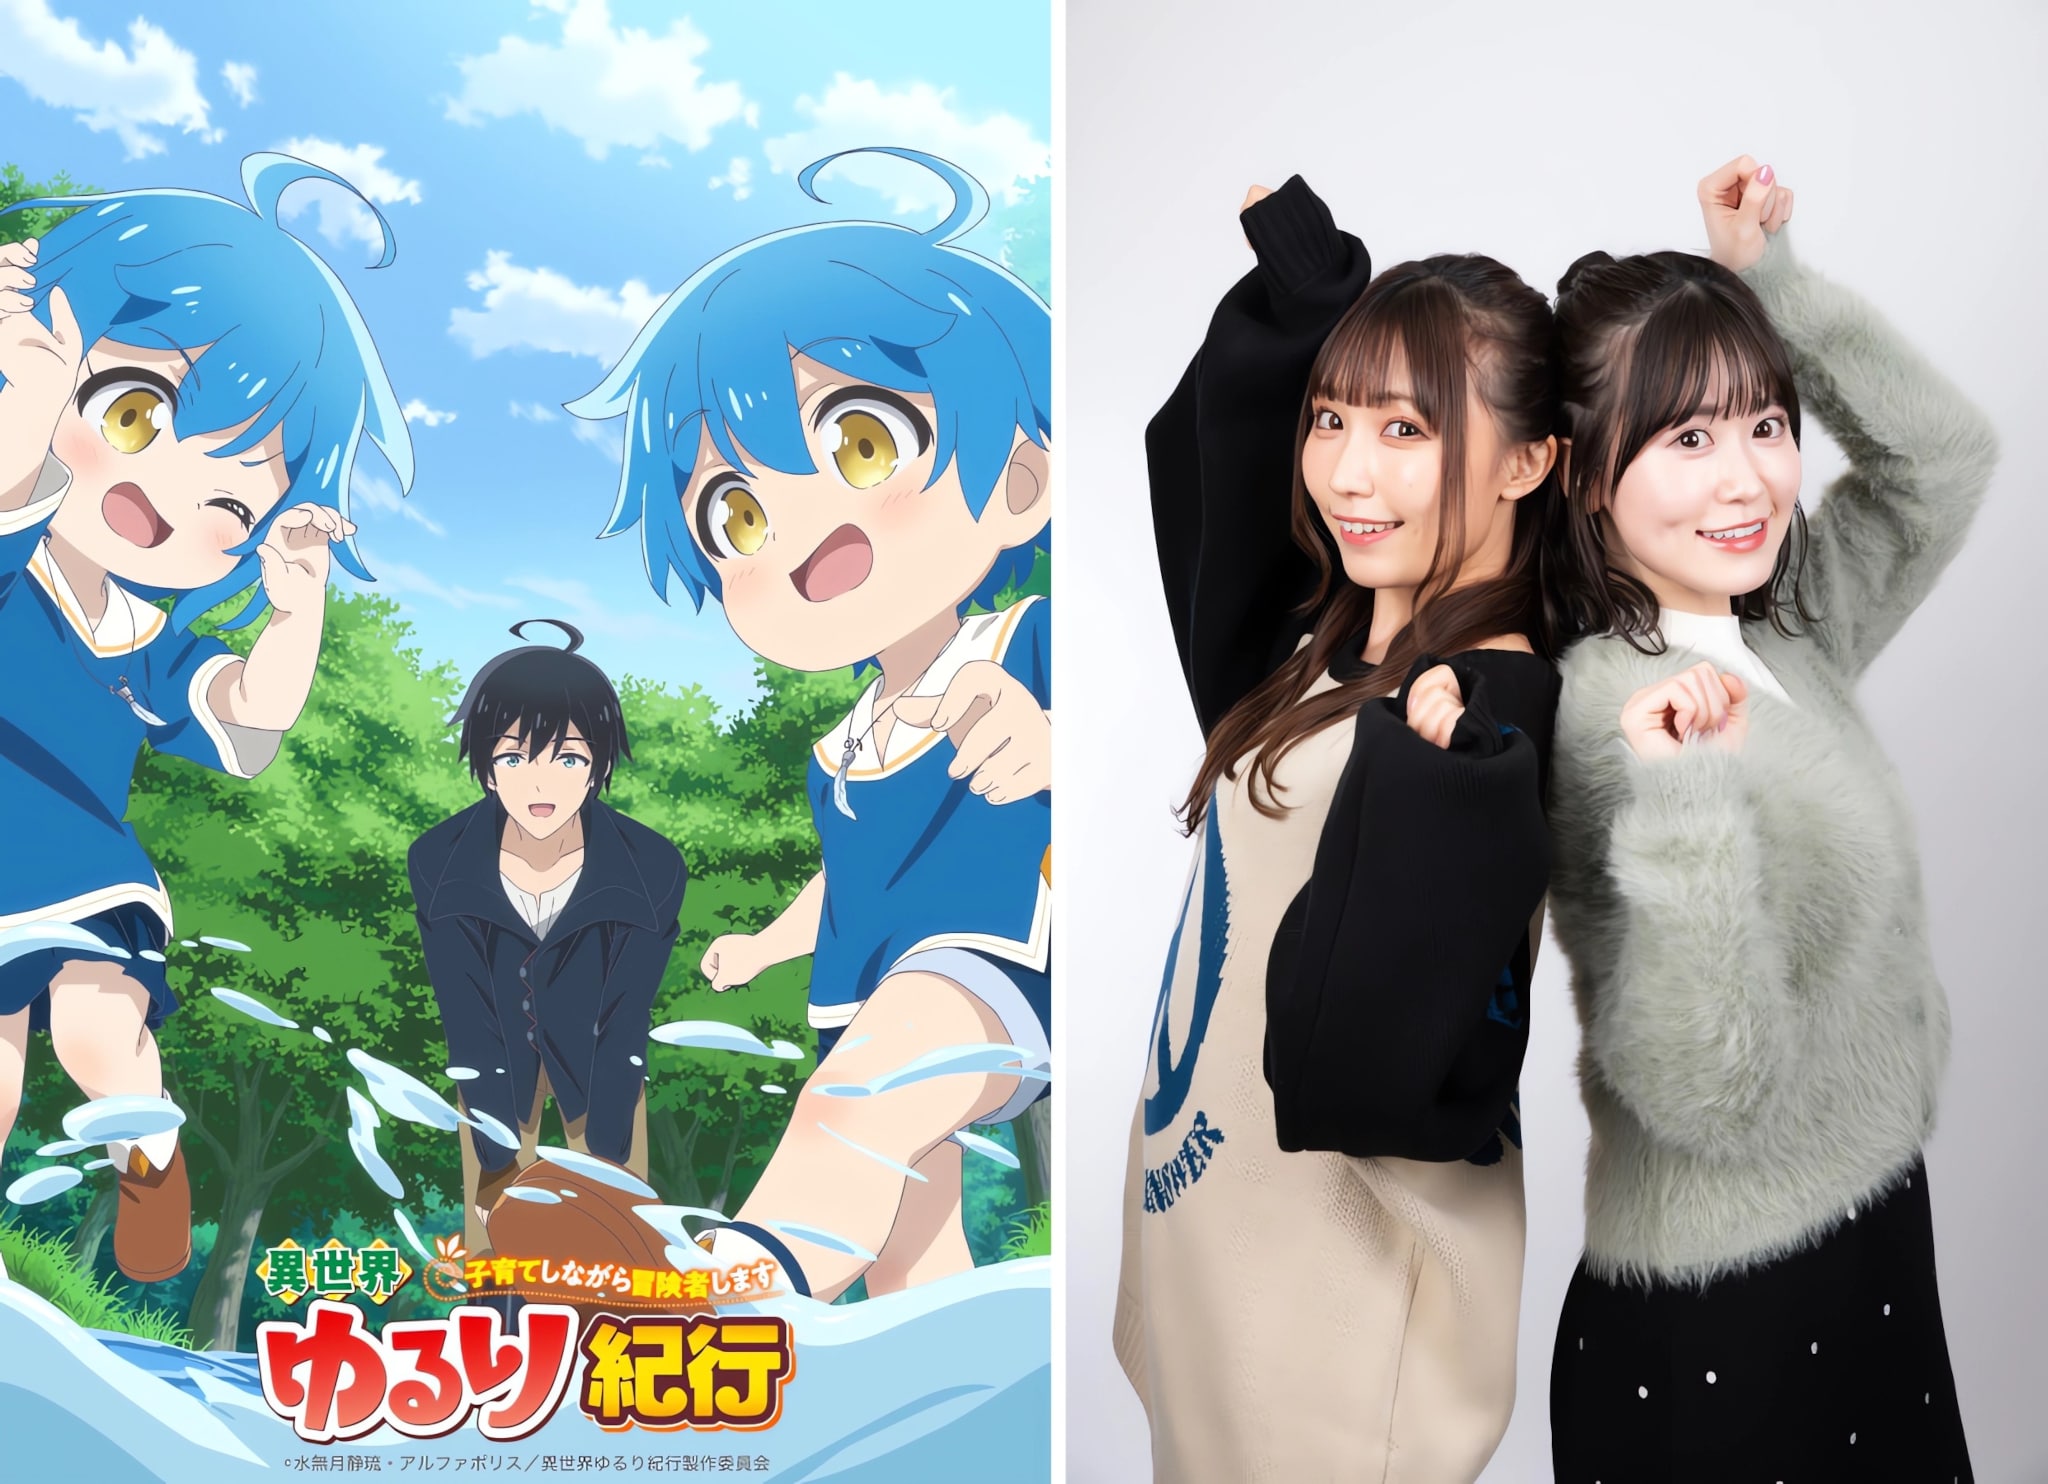 Annonce des comédiennes Aina Suzuki et Miharu Hanai dans les rôles de Allen et Elena et présentation du premier visuel de l'anime